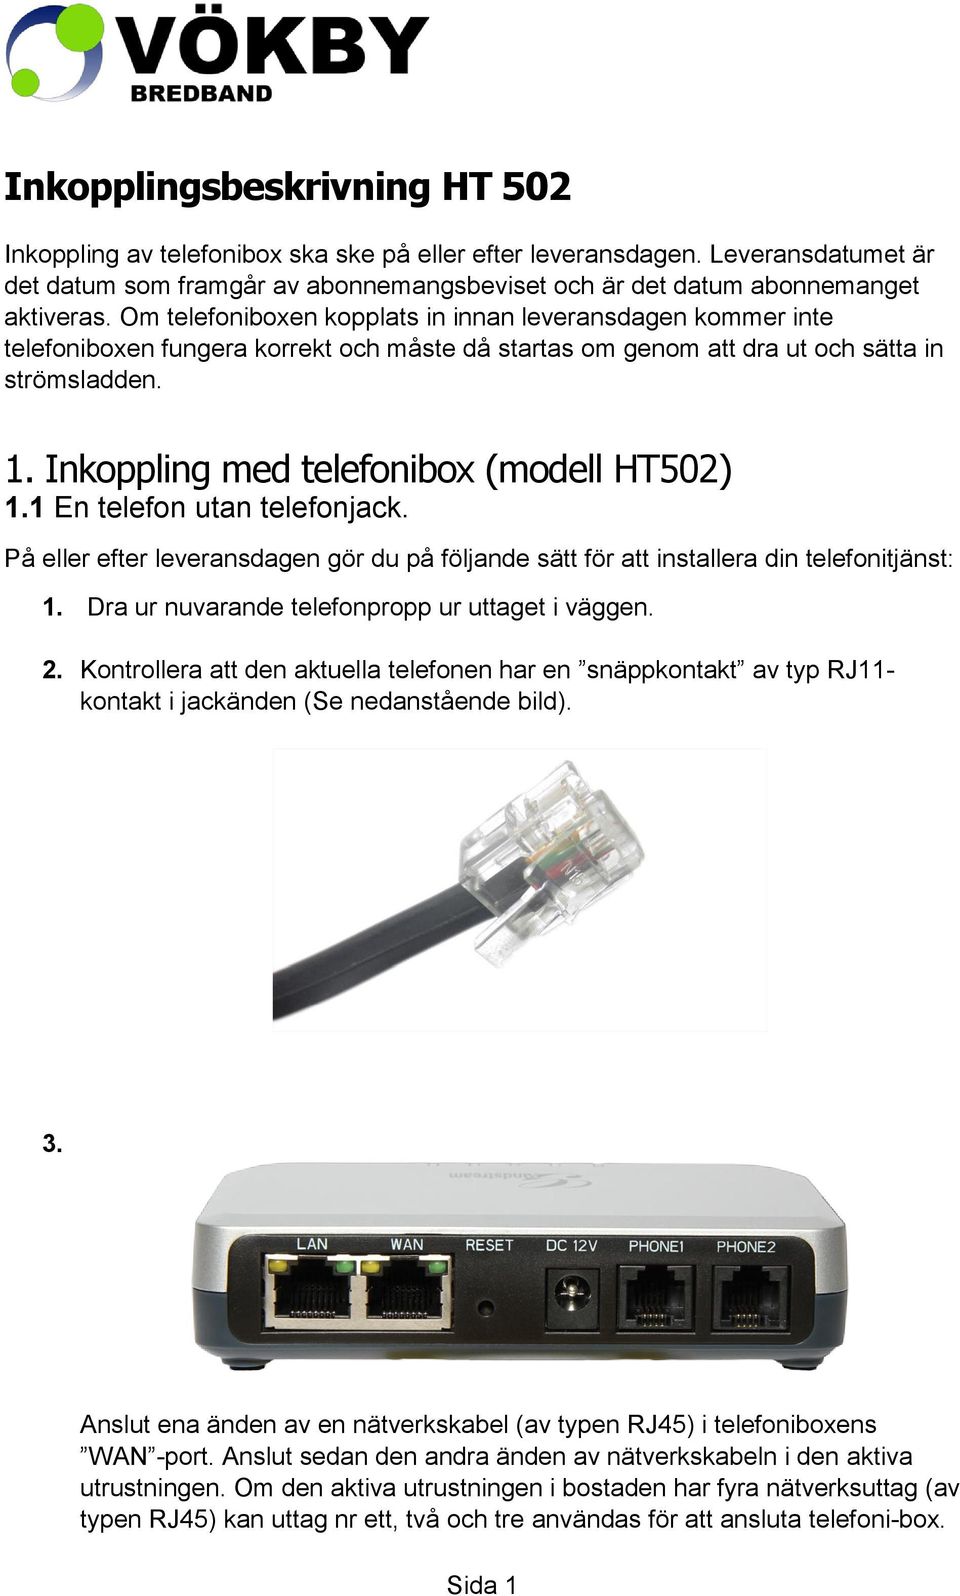 Inkoppling med telefonibox (modell HT502) 1.1 En telefon utan telefonjack. På eller efter leveransdagen gör du på följande sätt för att installera din telefonitjänst: 1.